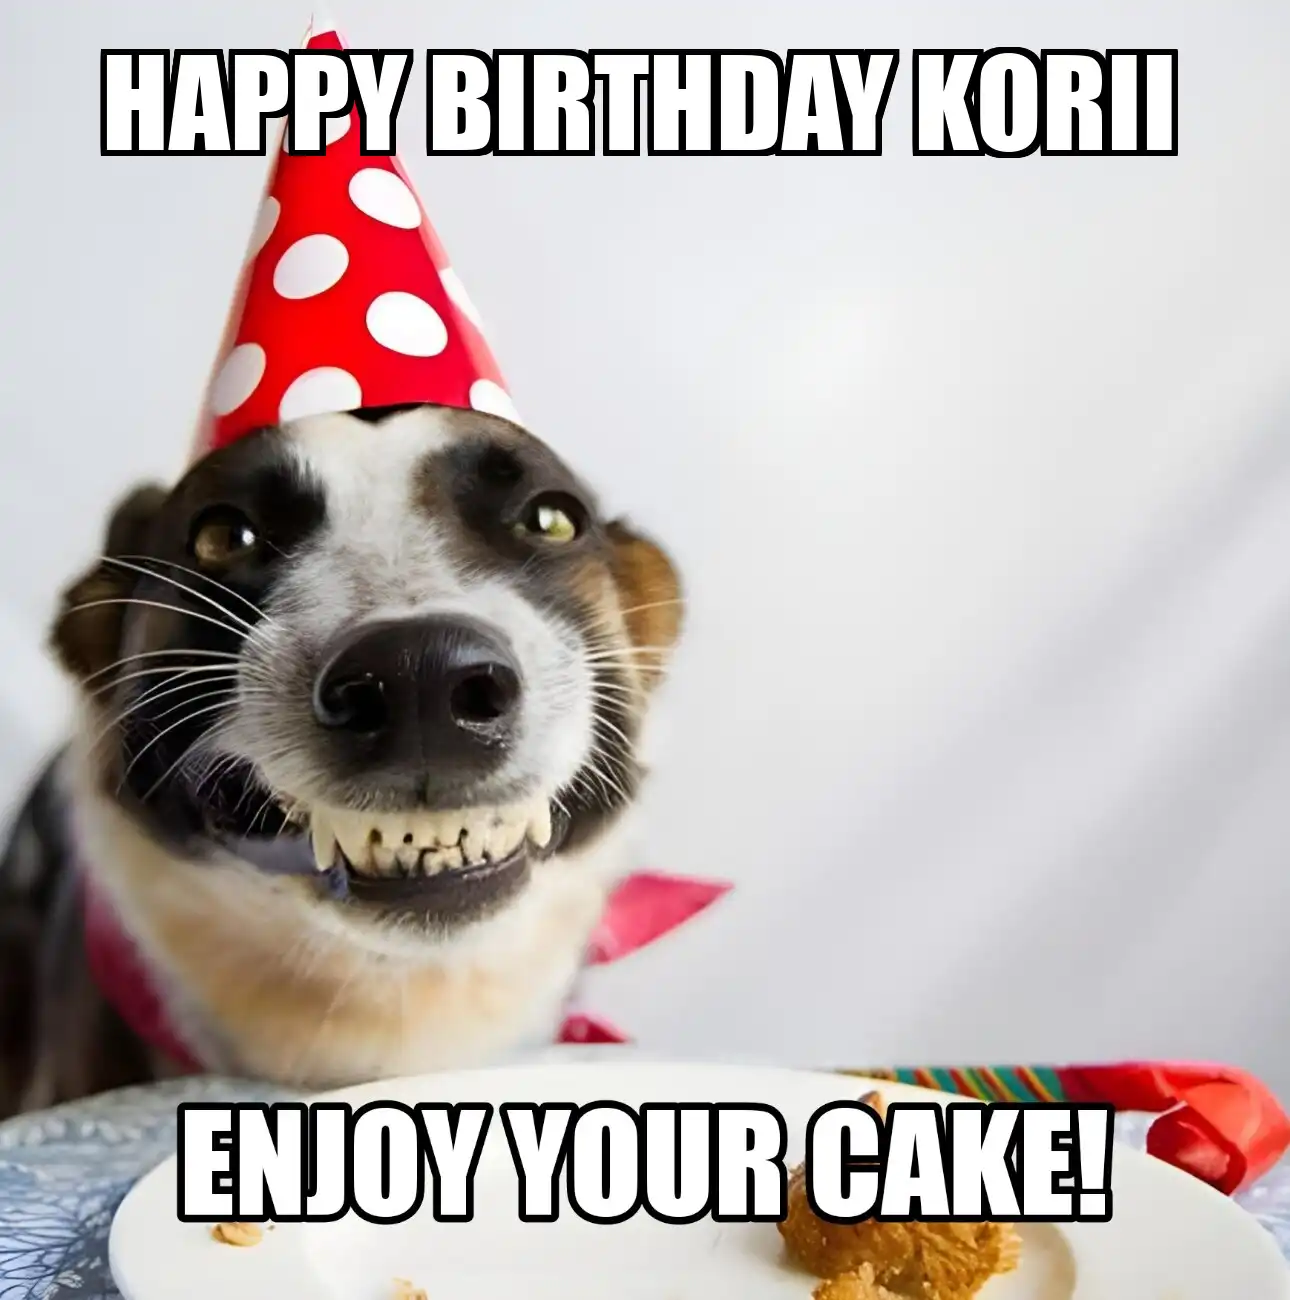 Happy Birthday Korii Enjoy Your Cake Dog Meme